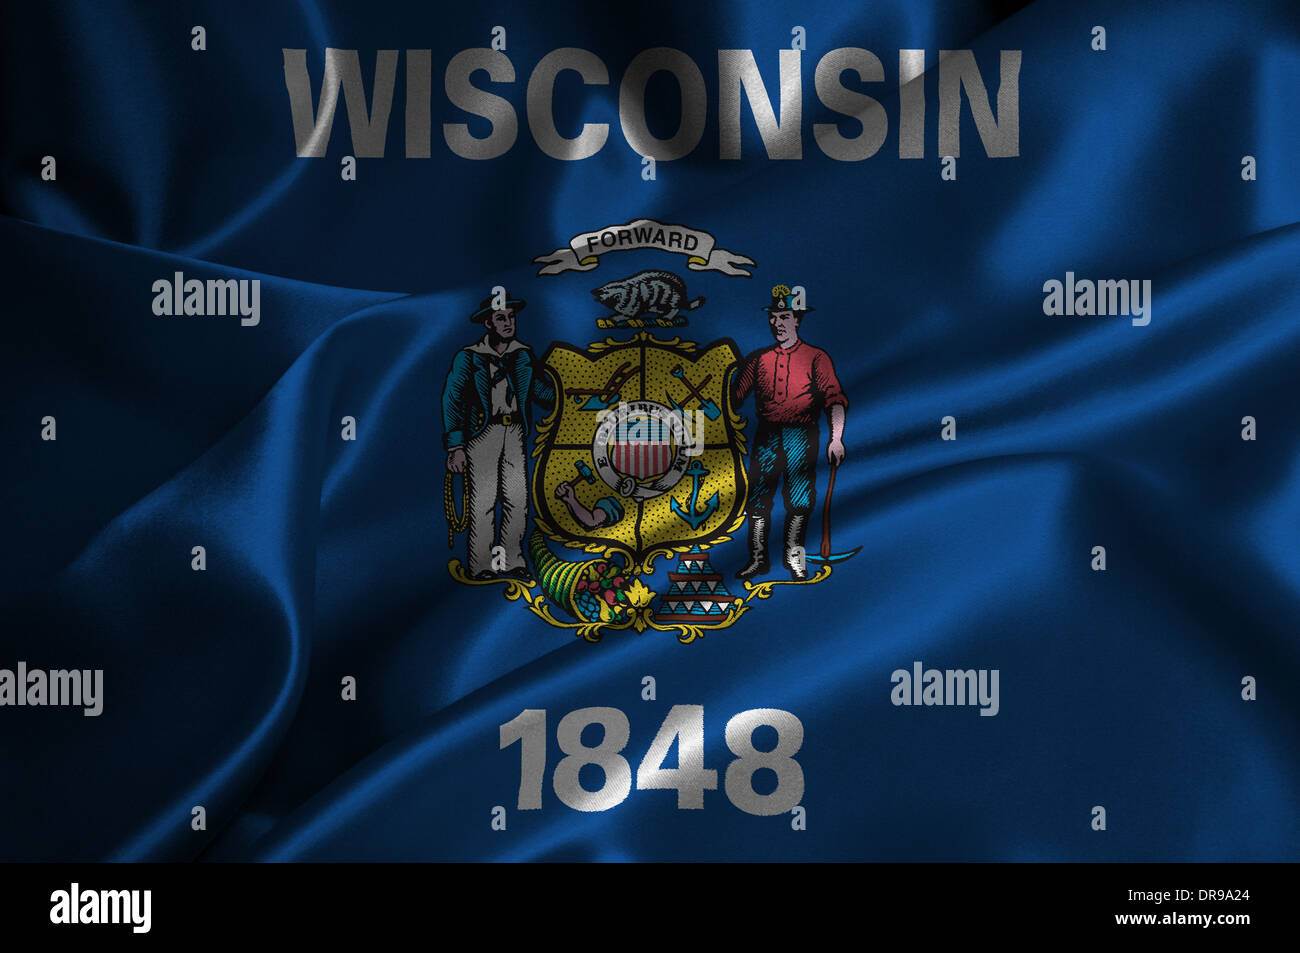 Wisconsin flag on satin texture. Stock Photo